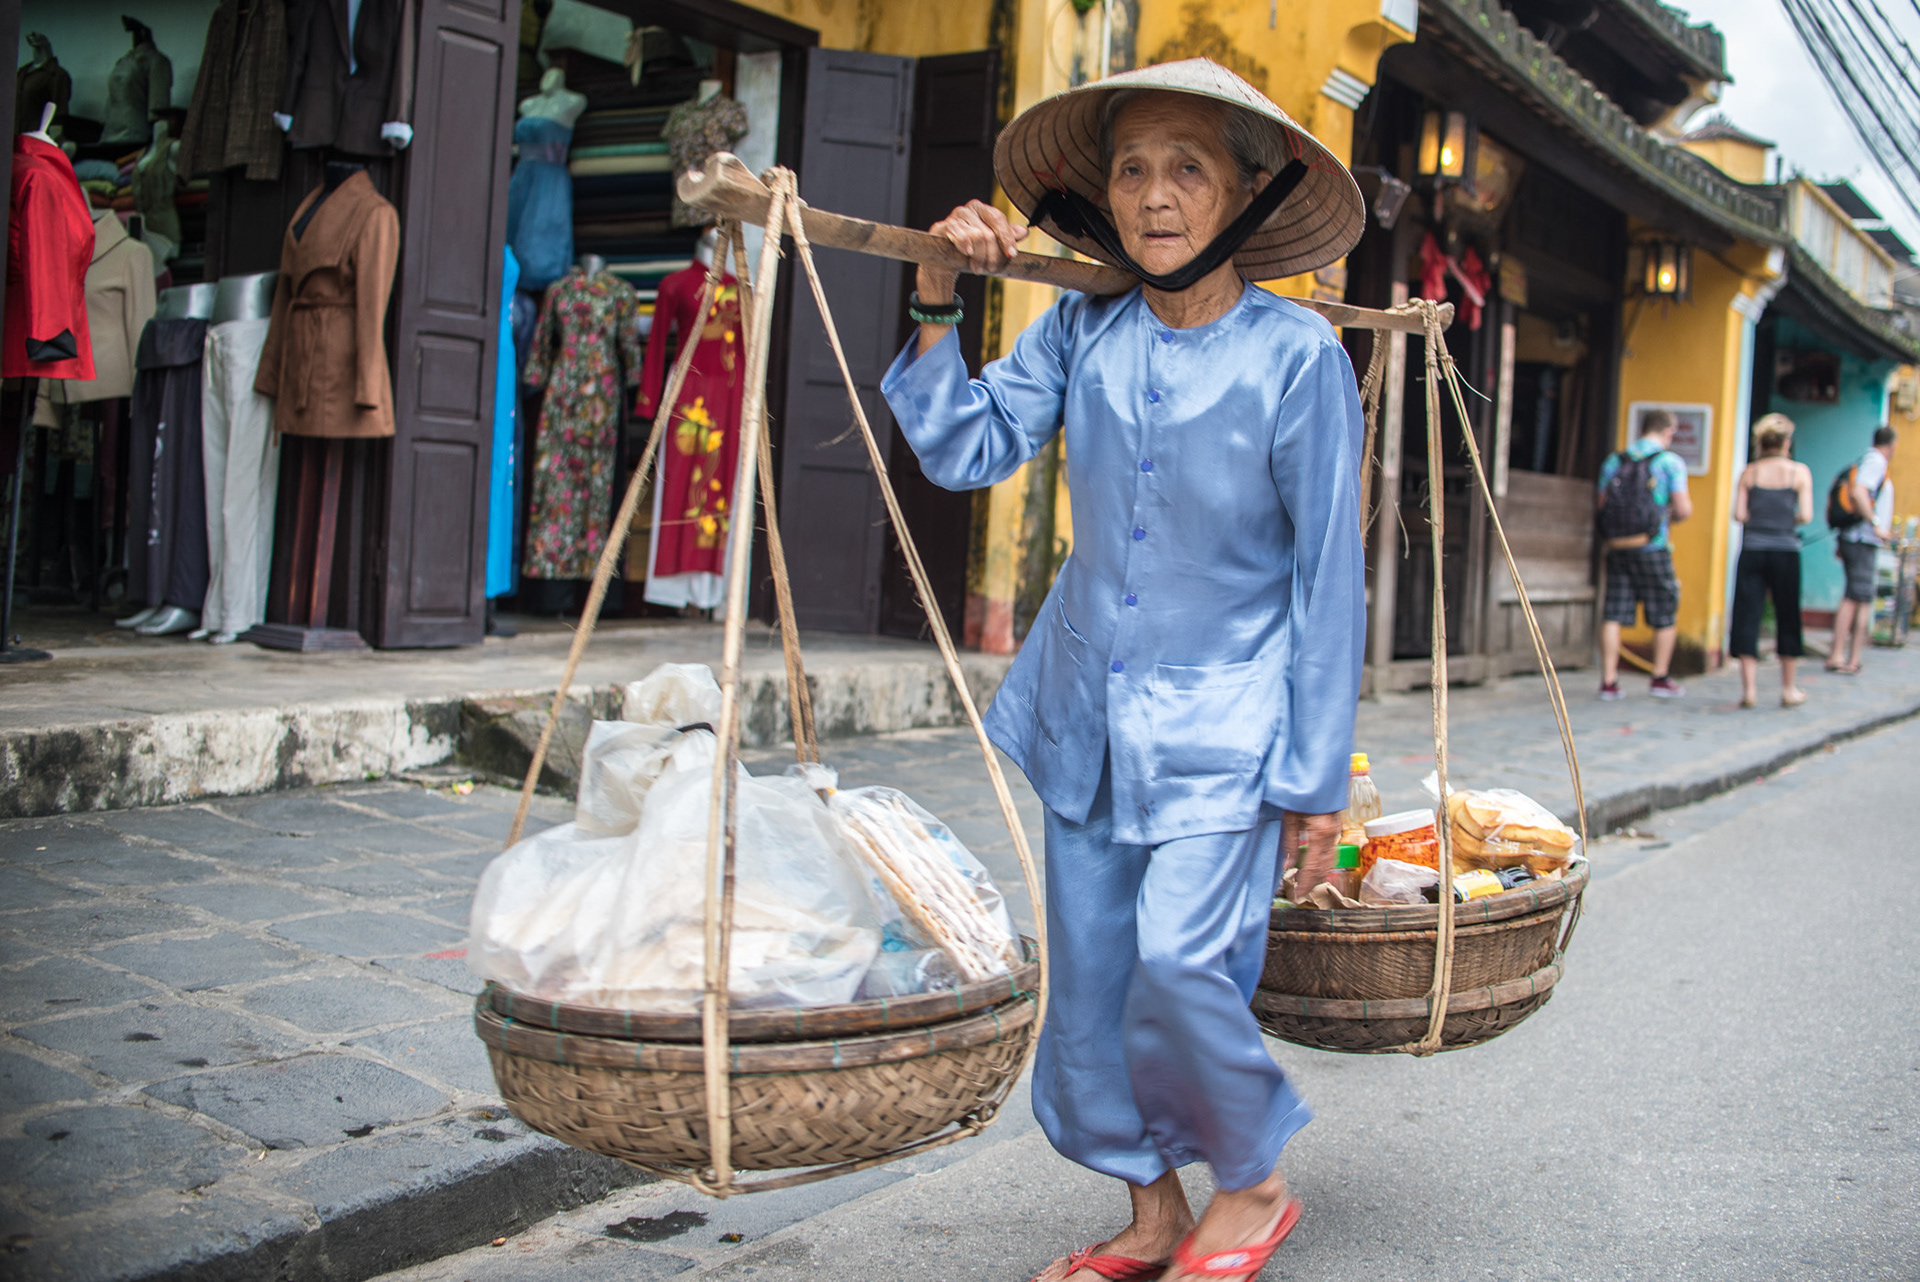 Народ во вьетнаме 3. Йенвьен(Вьетнам) Пинсян. Вьетнамский костюм. Одежда вьетнамца Повседневная. Вьетнамский народный костюм.